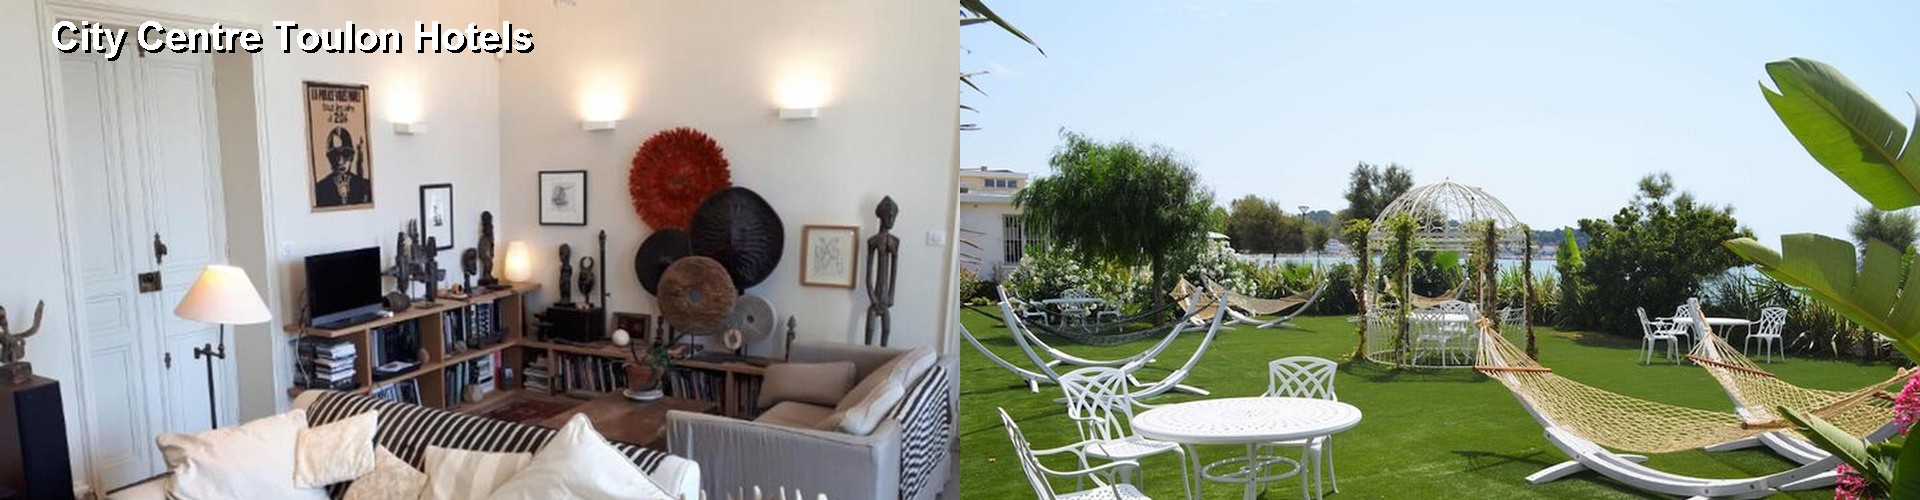 5 Best Hotels near City Centre Toulon